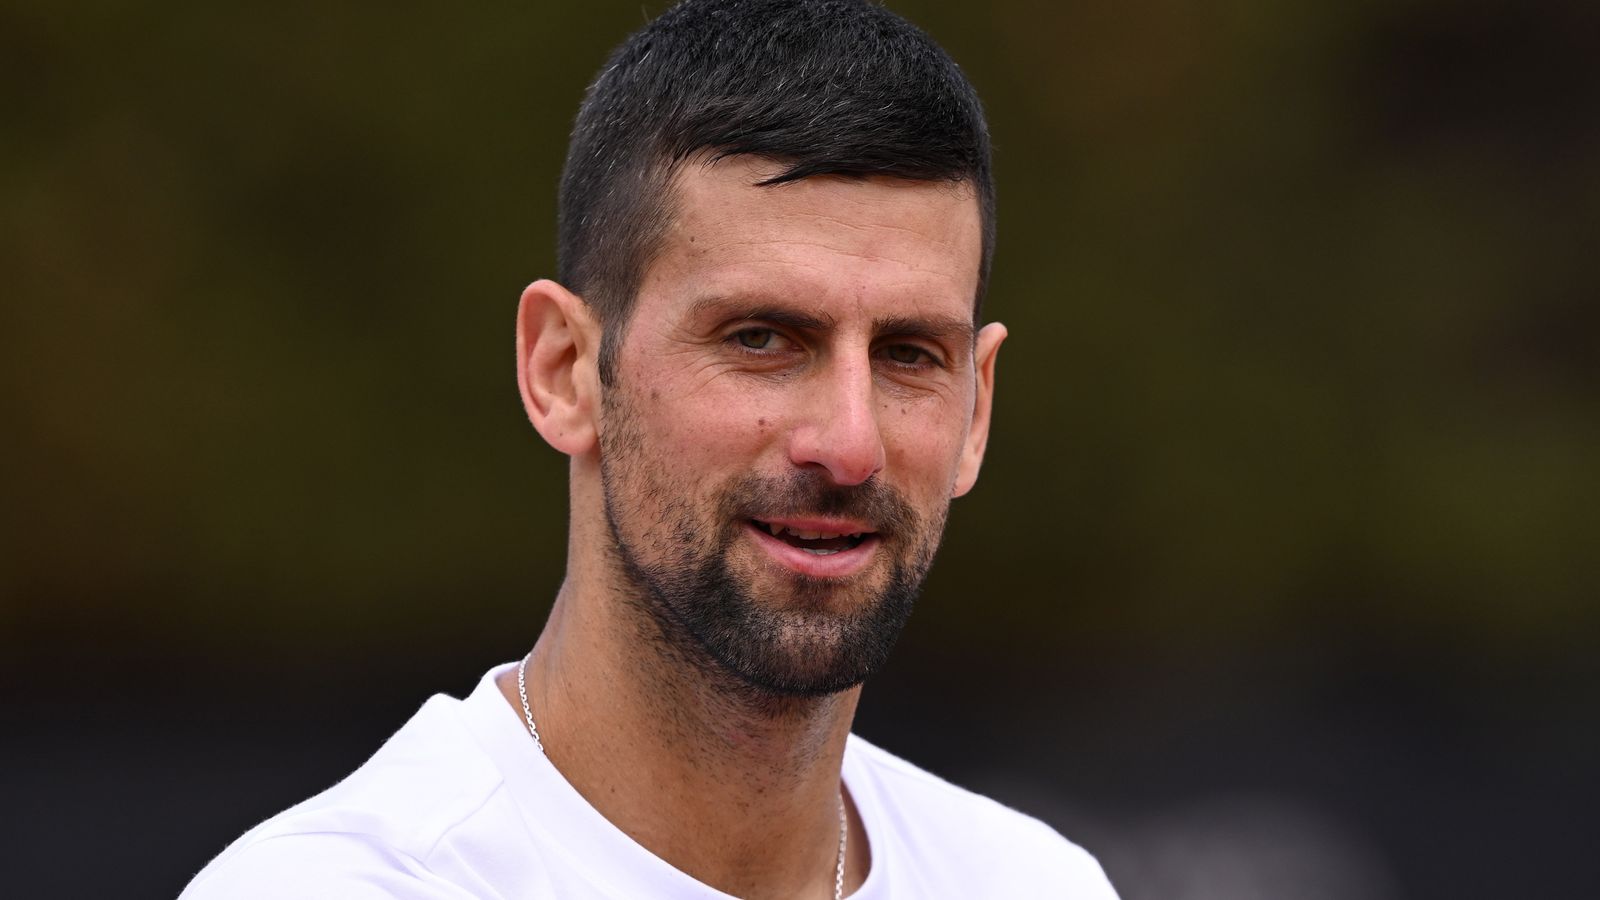 Novak Djokovic espera alcanzar su máxima forma para el Abierto de Francia, Wimbledon, los Juegos Olímpicos y el Abierto de Estados Unidos este verano |  Noticias de tenis